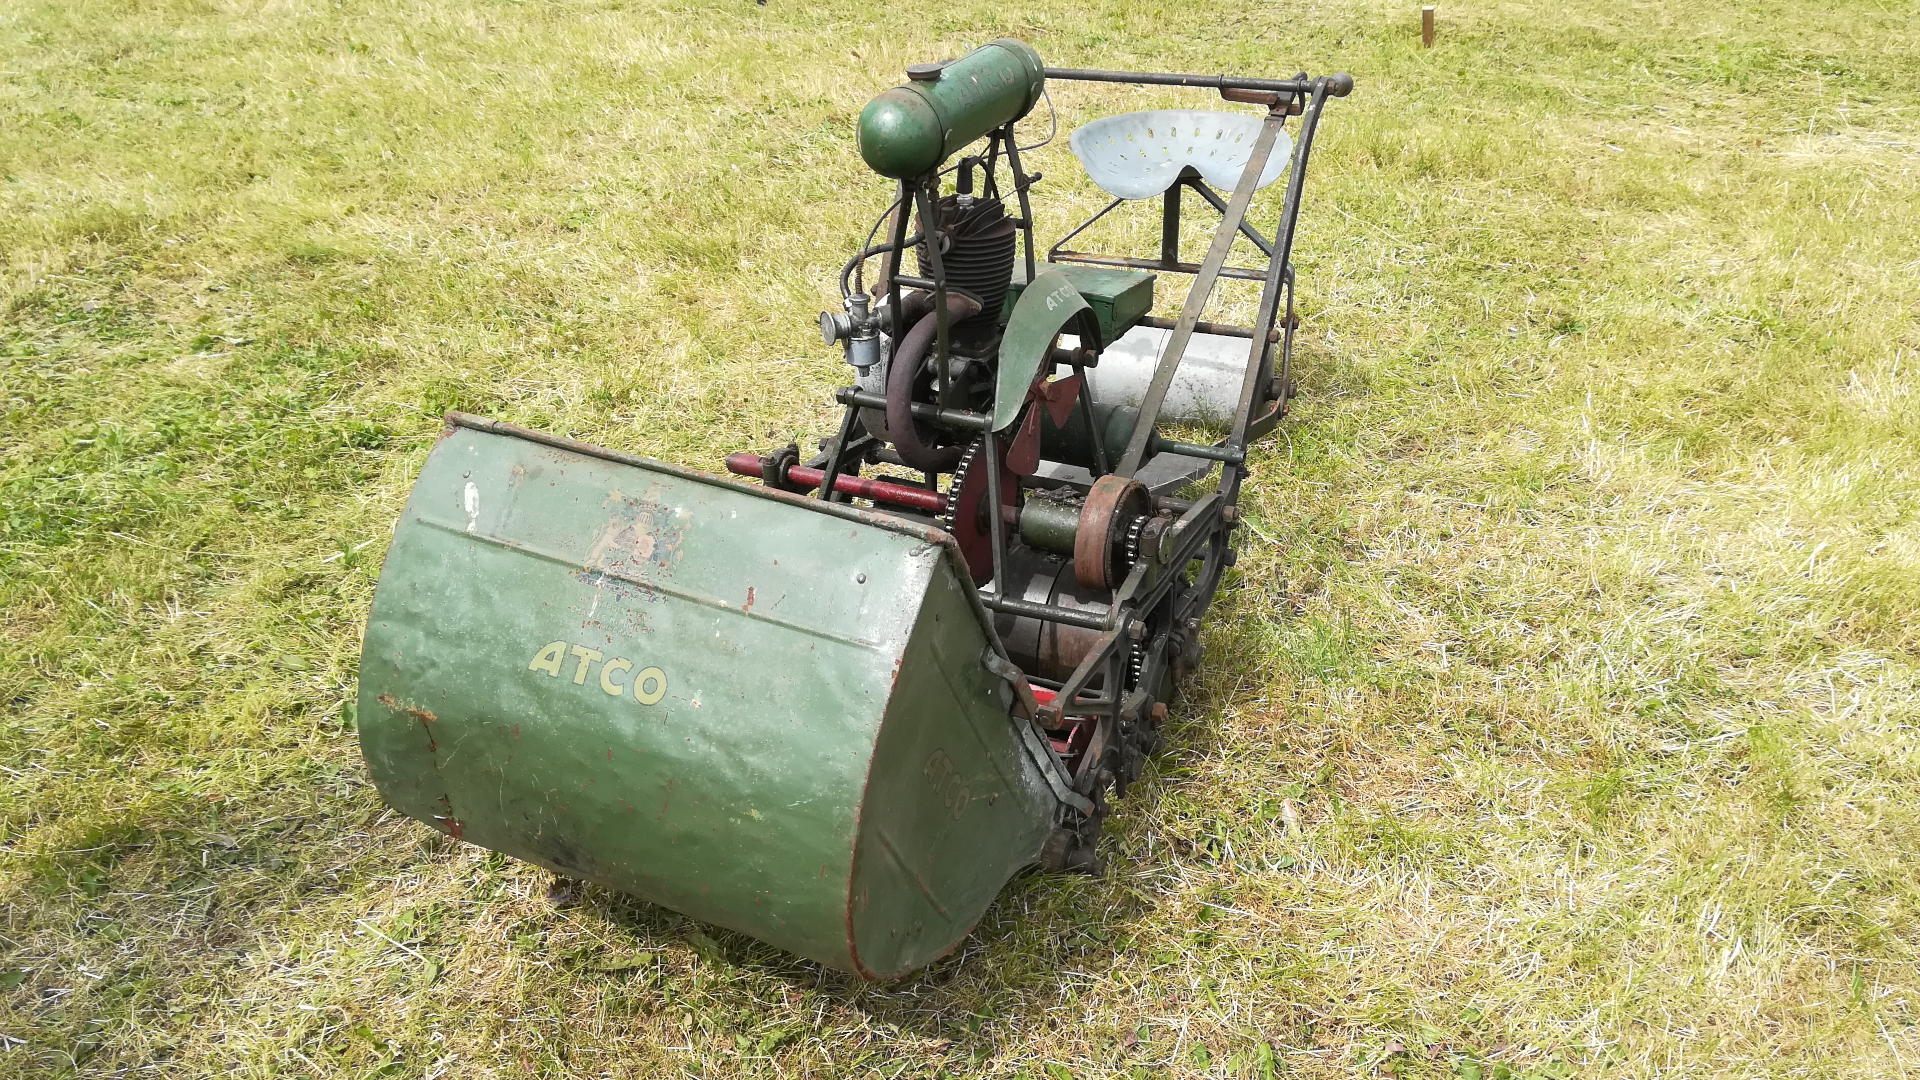 deb crisp recommends Antique Lawn Mowers For Sale